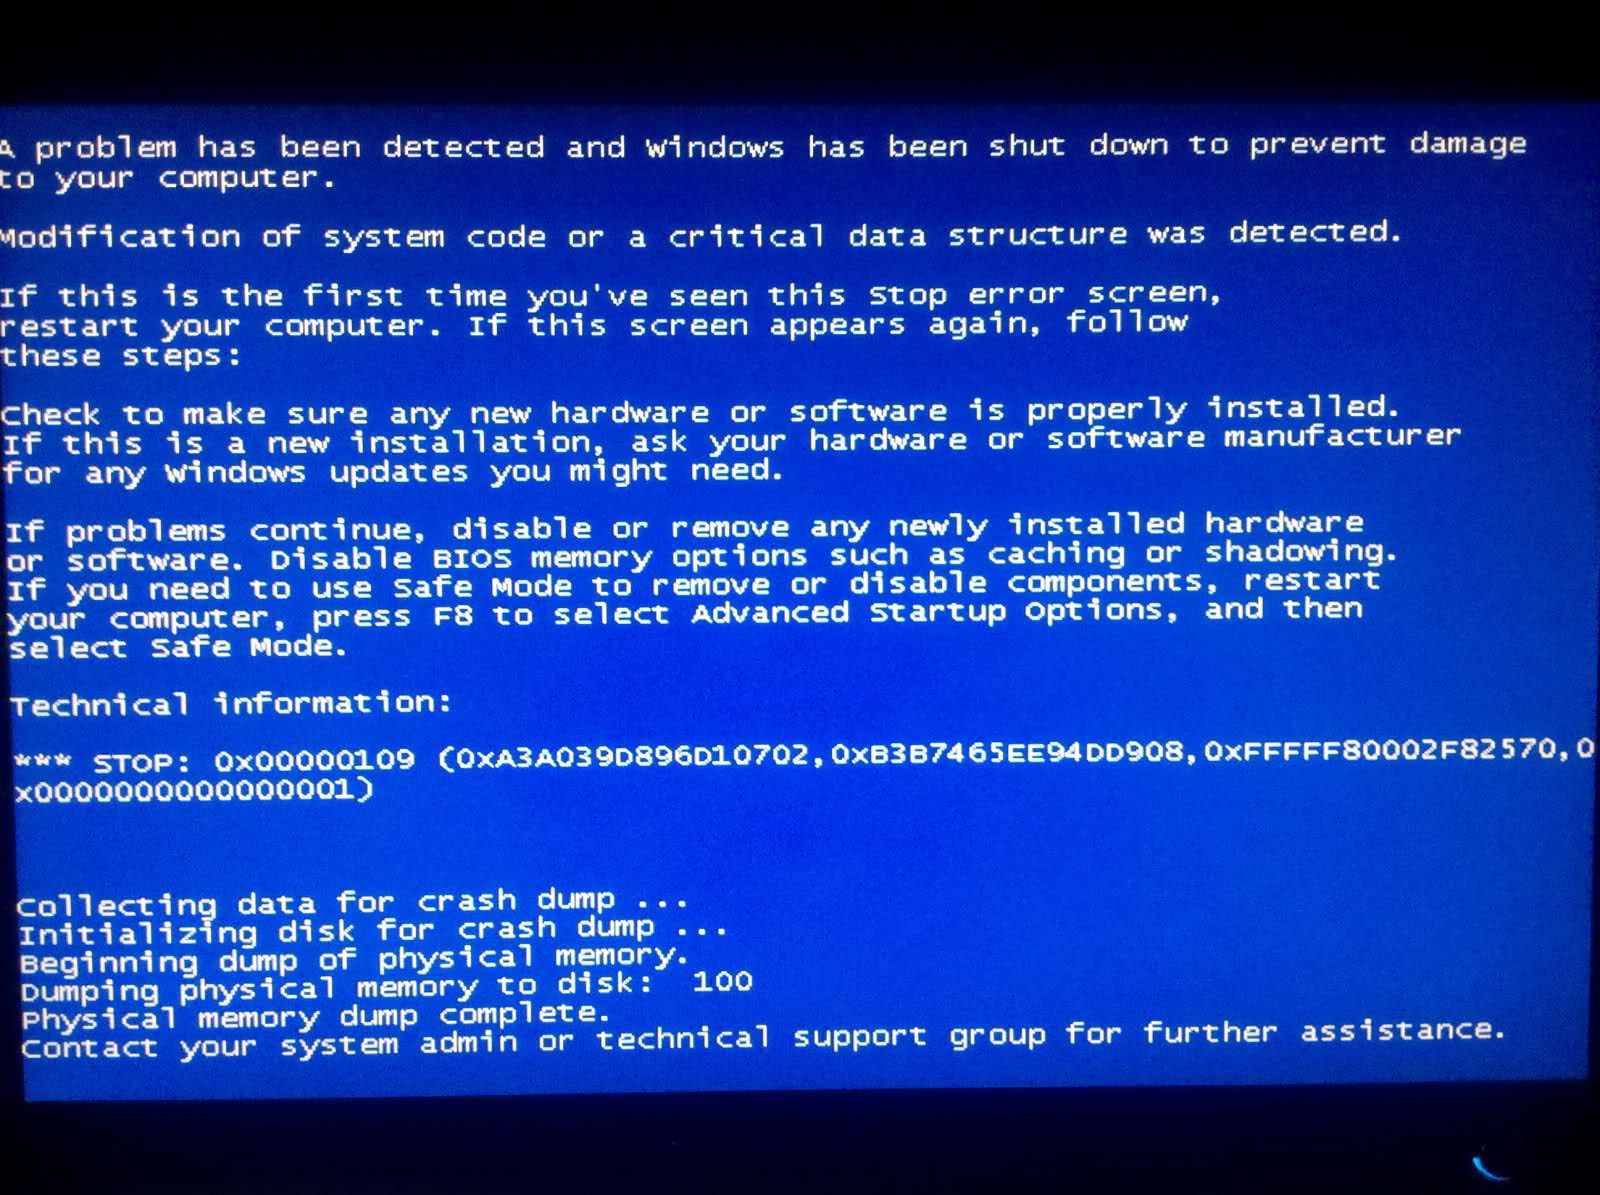 ზოგიერთმა Windows- ის შეტყობინება ამ შეცდომის შესახებ იტყობინება, რომელიც ჩვეულებრივ ეკრანზე გამოჩნდება სისტემაში ინიციალიზაციისას: